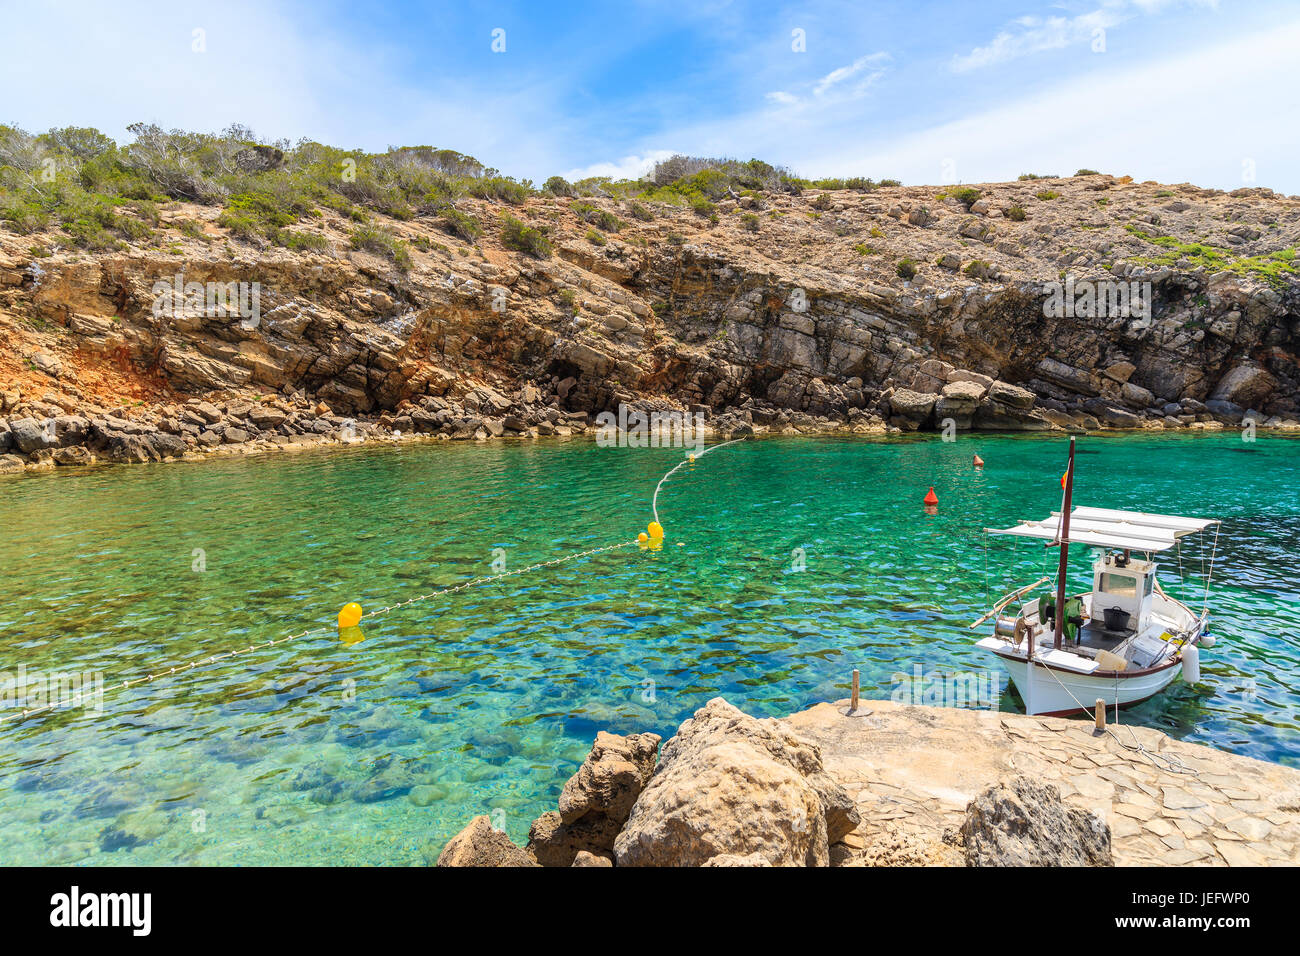 Bateau de pêche typique blanc magnifique mouillage dans la baie de Cala Carbo avec de l'eau de mer vert émeraude, l'île d'Ibiza, Espagne Banque D'Images